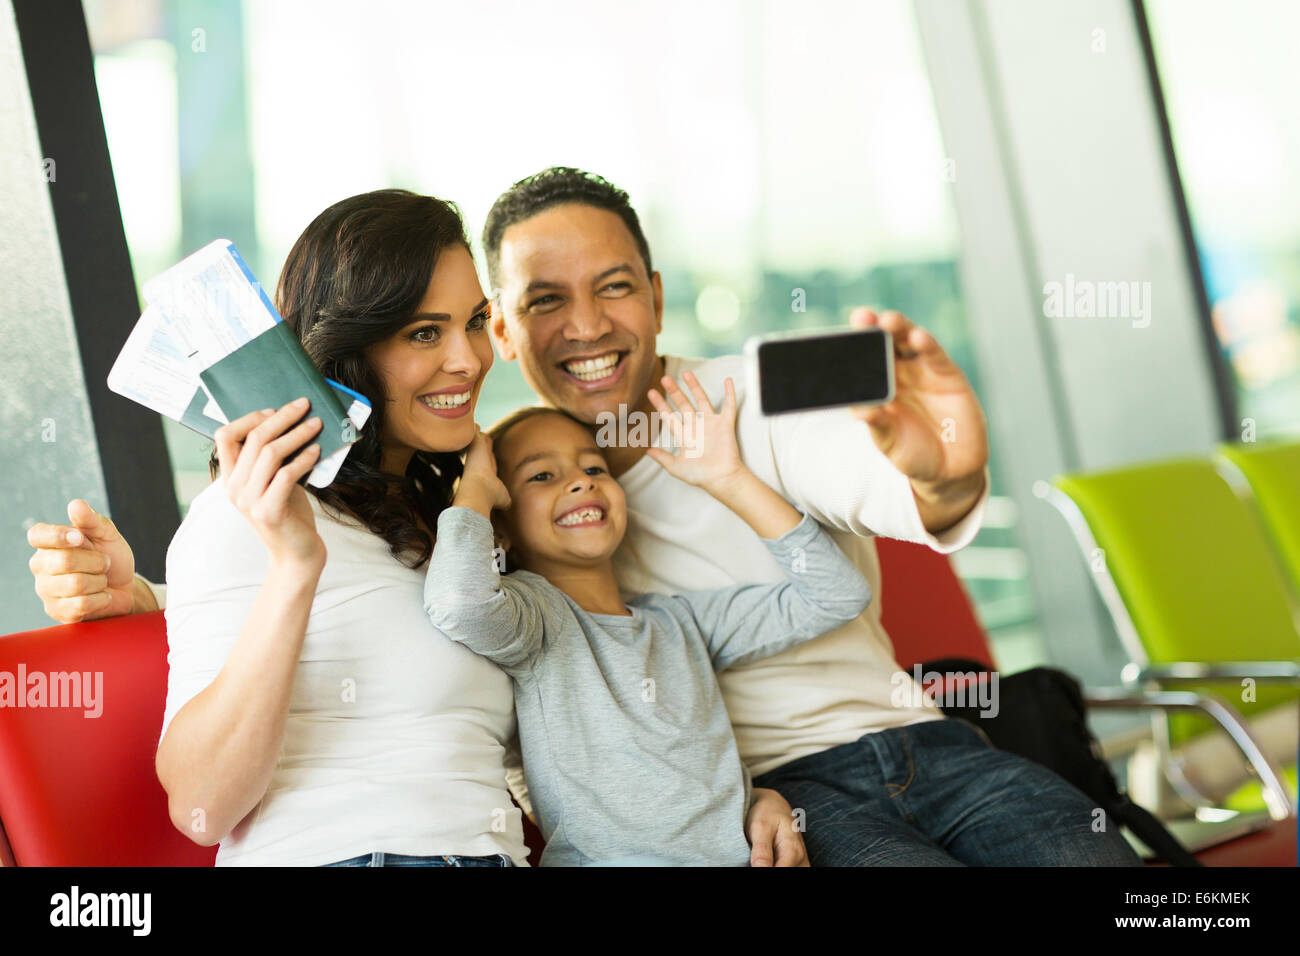 Famille heureuse à l'aéroport taking self portrait with smart phone at airport Banque D'Images